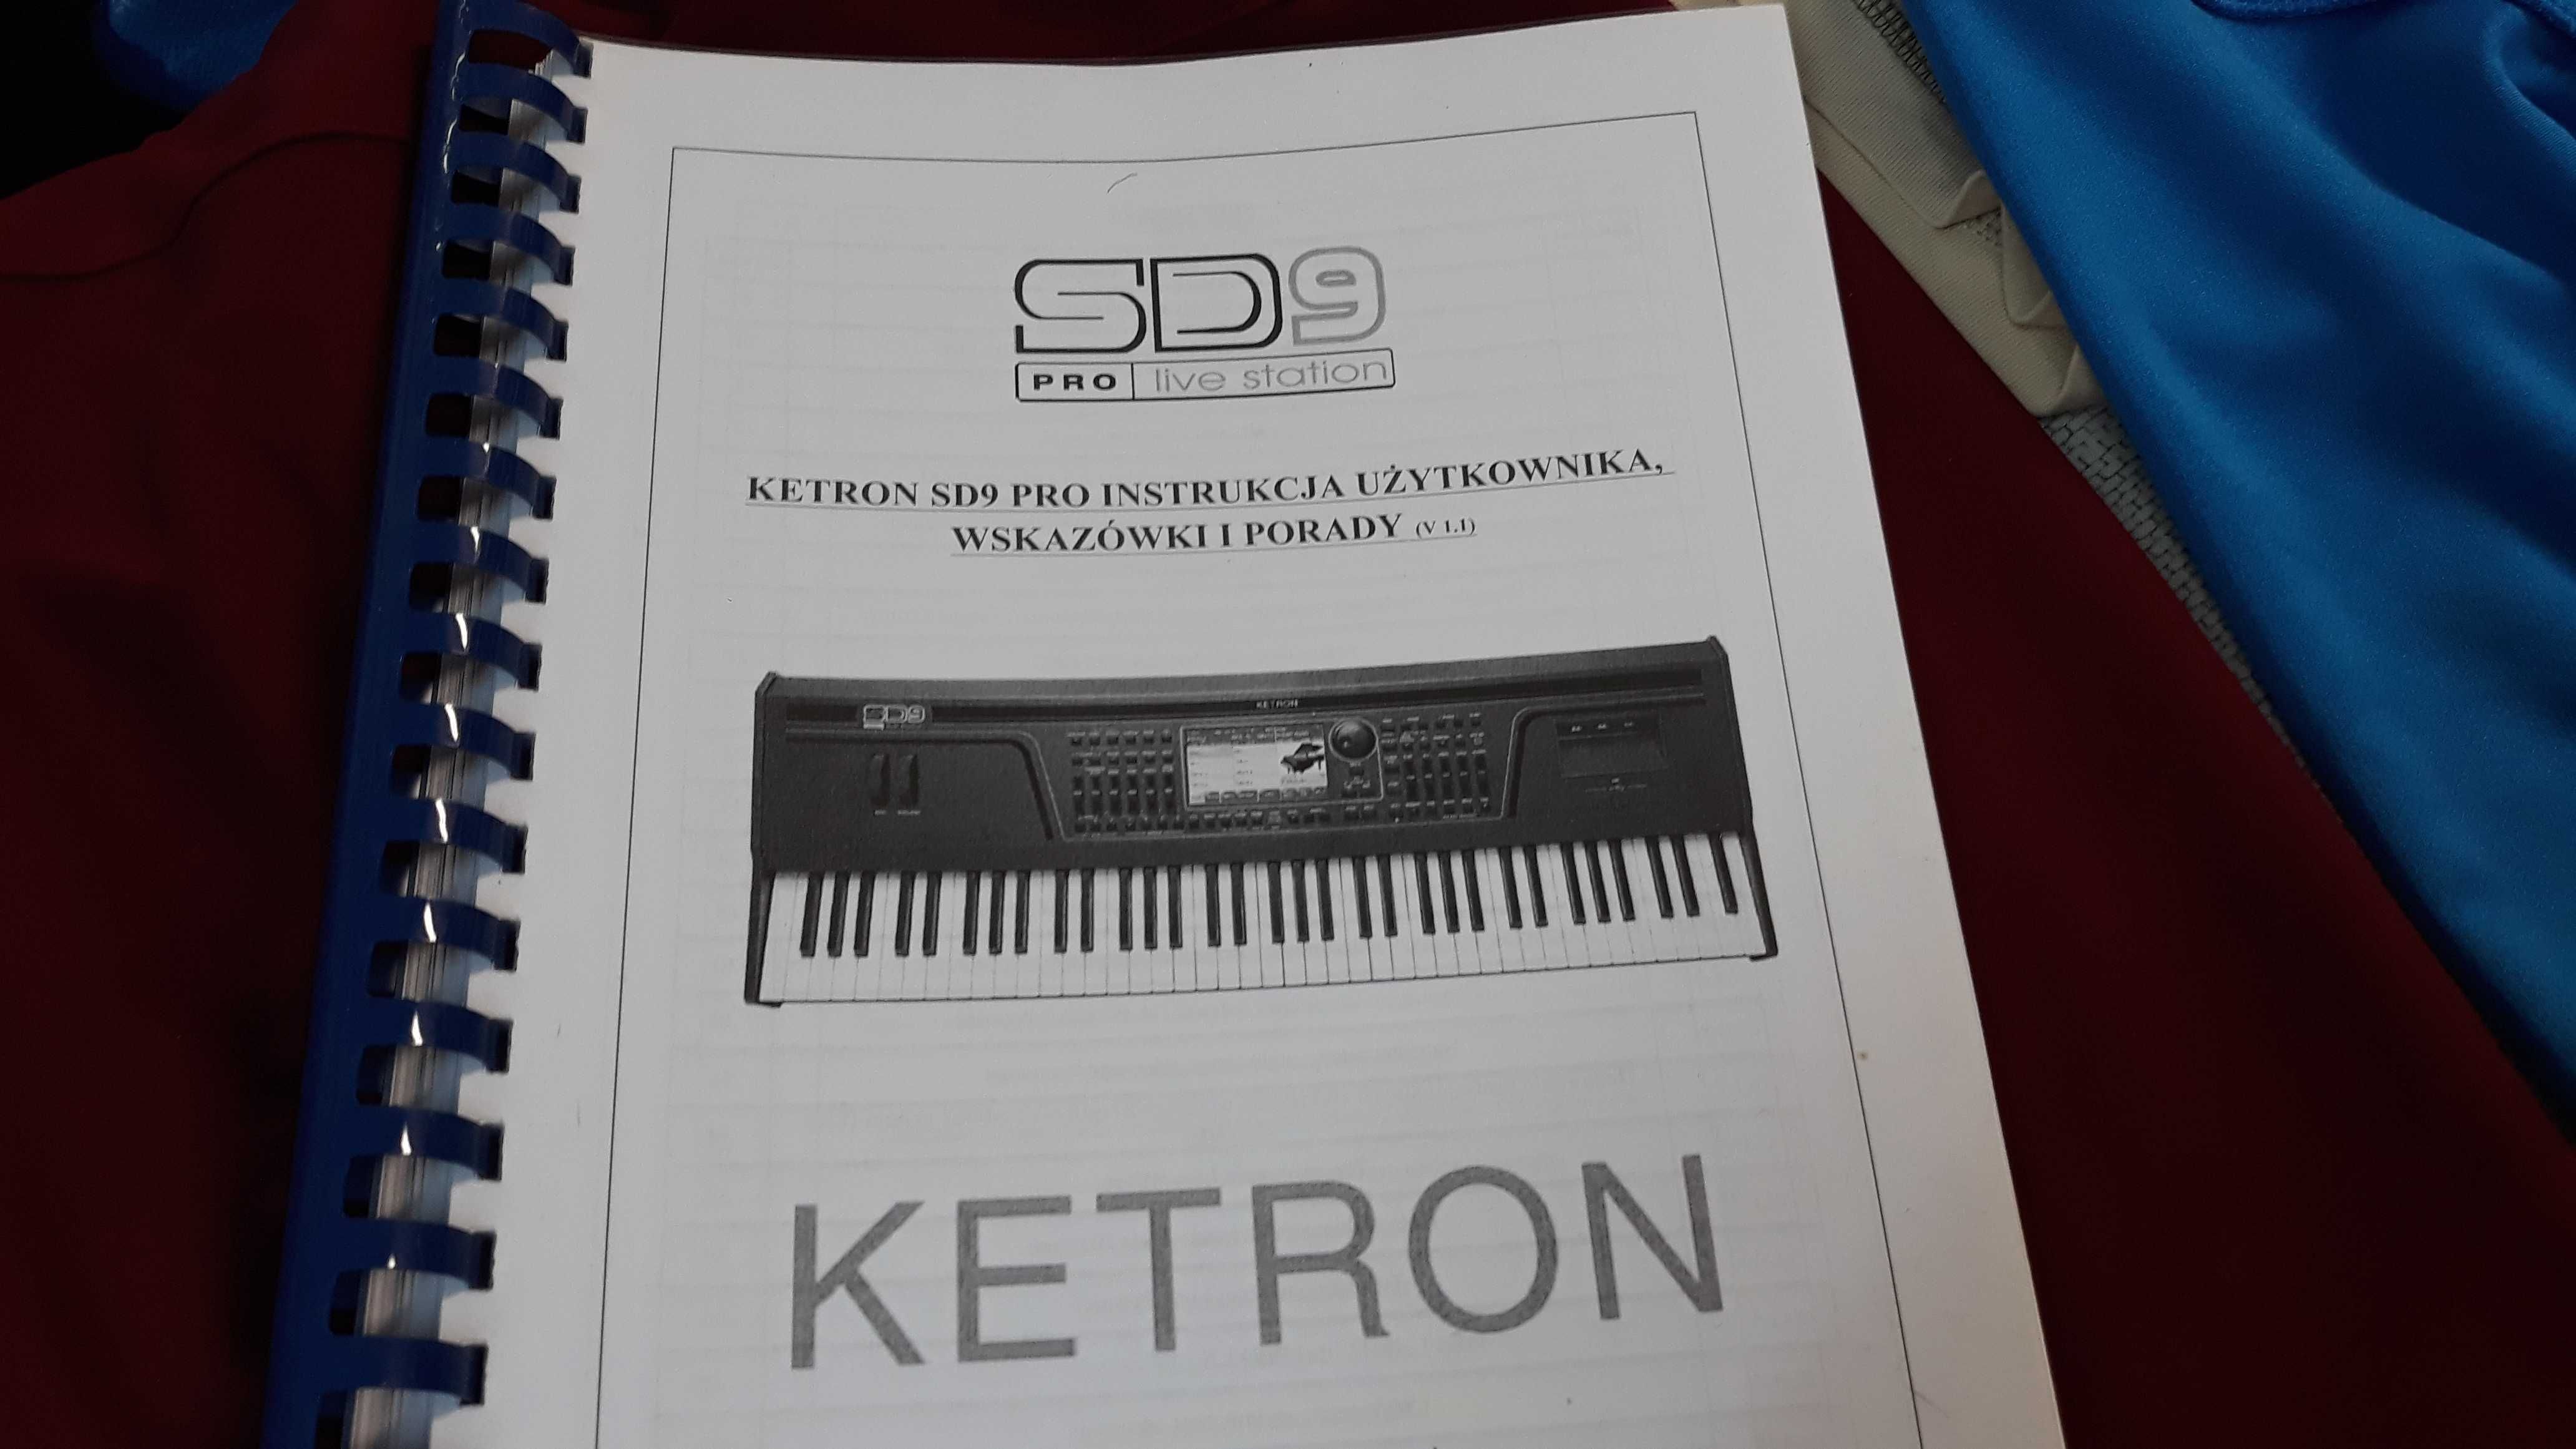 Ketron SD 9 klawisz tylko dla profesjonalistów